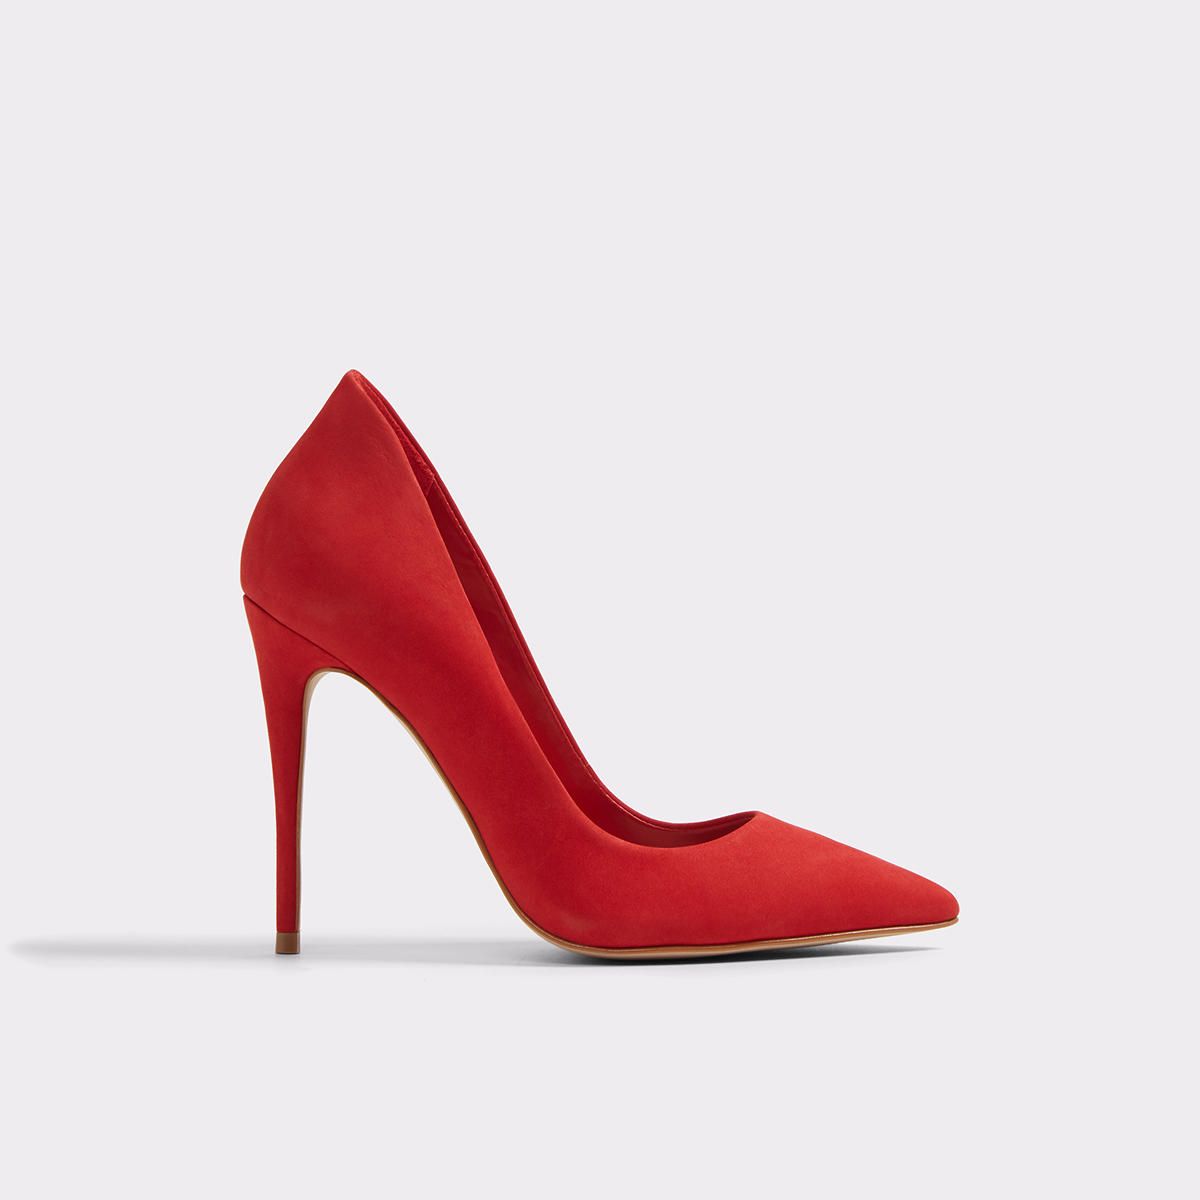 Cassedy Red Nubuck Women's Pumps | Aldo Shoes (US)